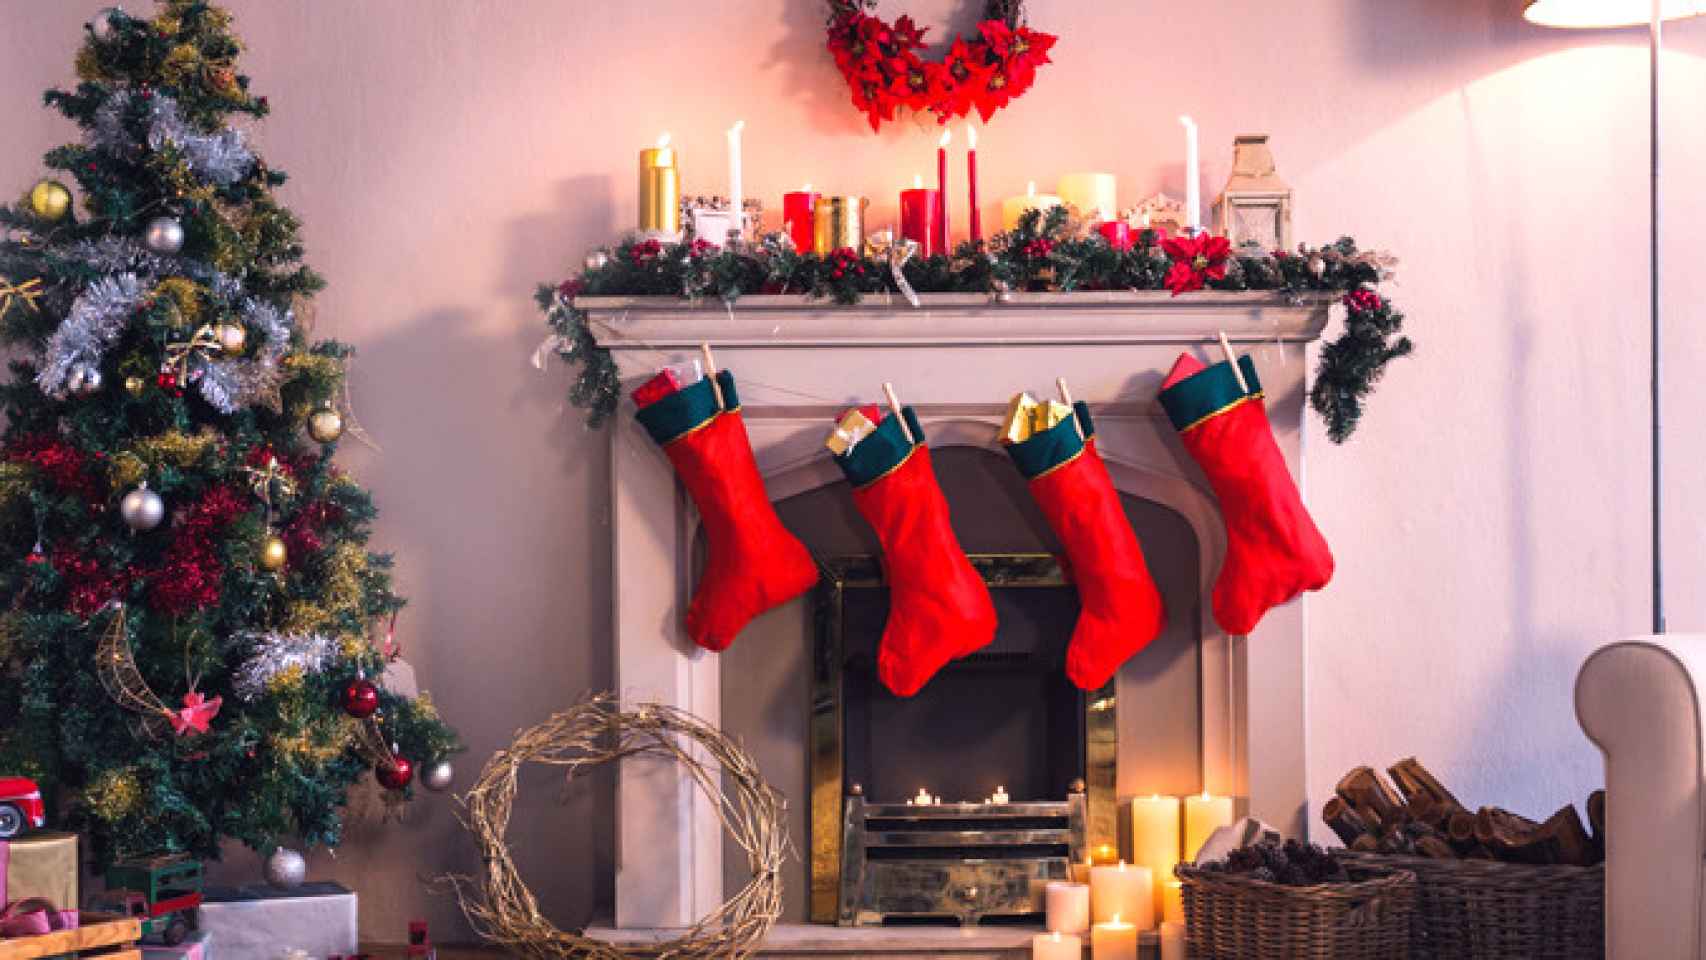 El interior de una casa con decoración navideña, la época en la que se compran regalos por internet / CG